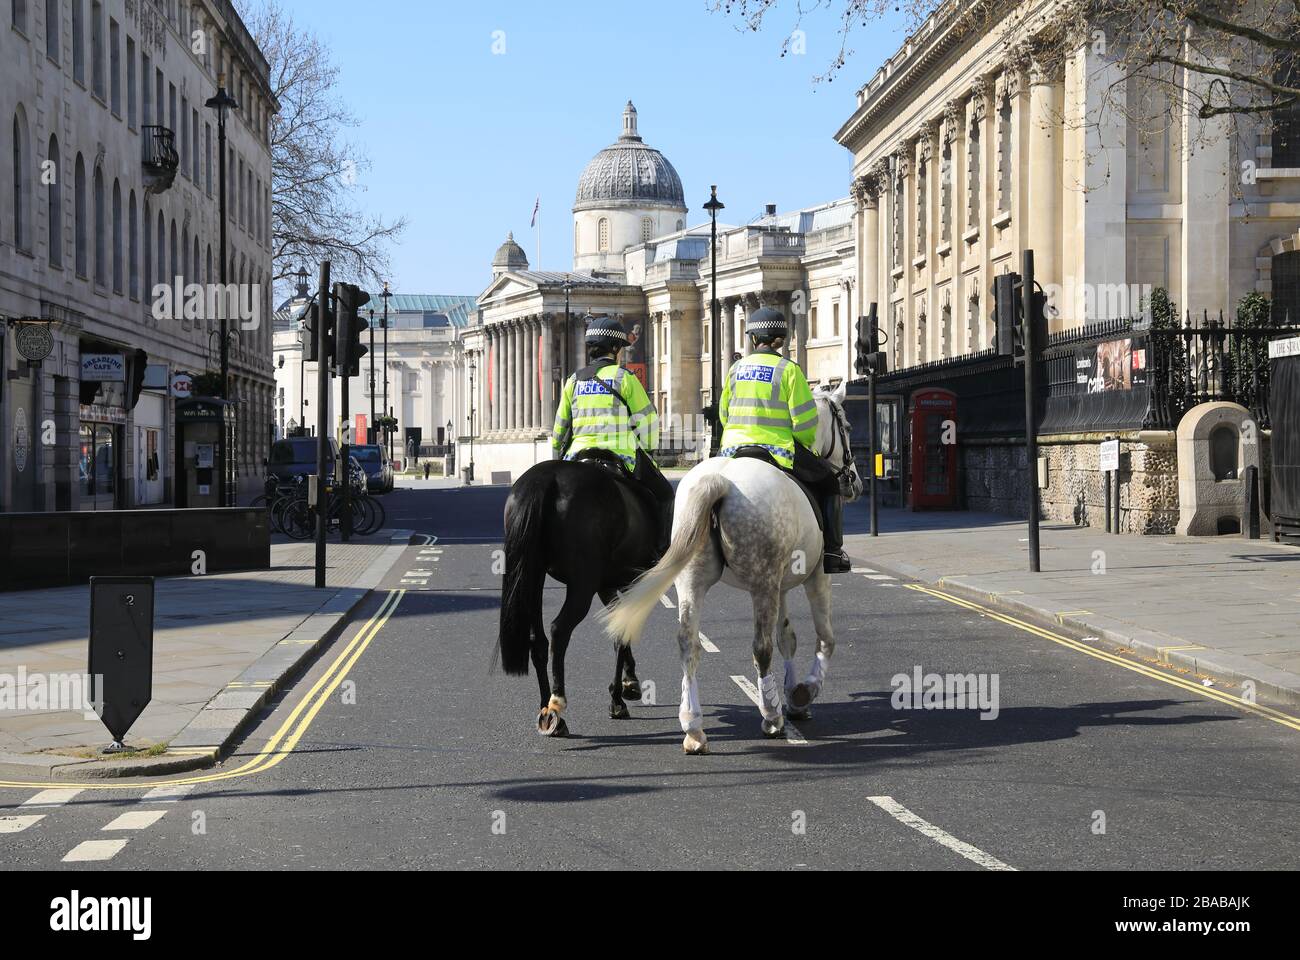 La policía montó en patrulla alrededor de Trafalgar Square durante el cierre de coronavirus de 2020, en el centro de Londres, Reino Unido Foto de stock